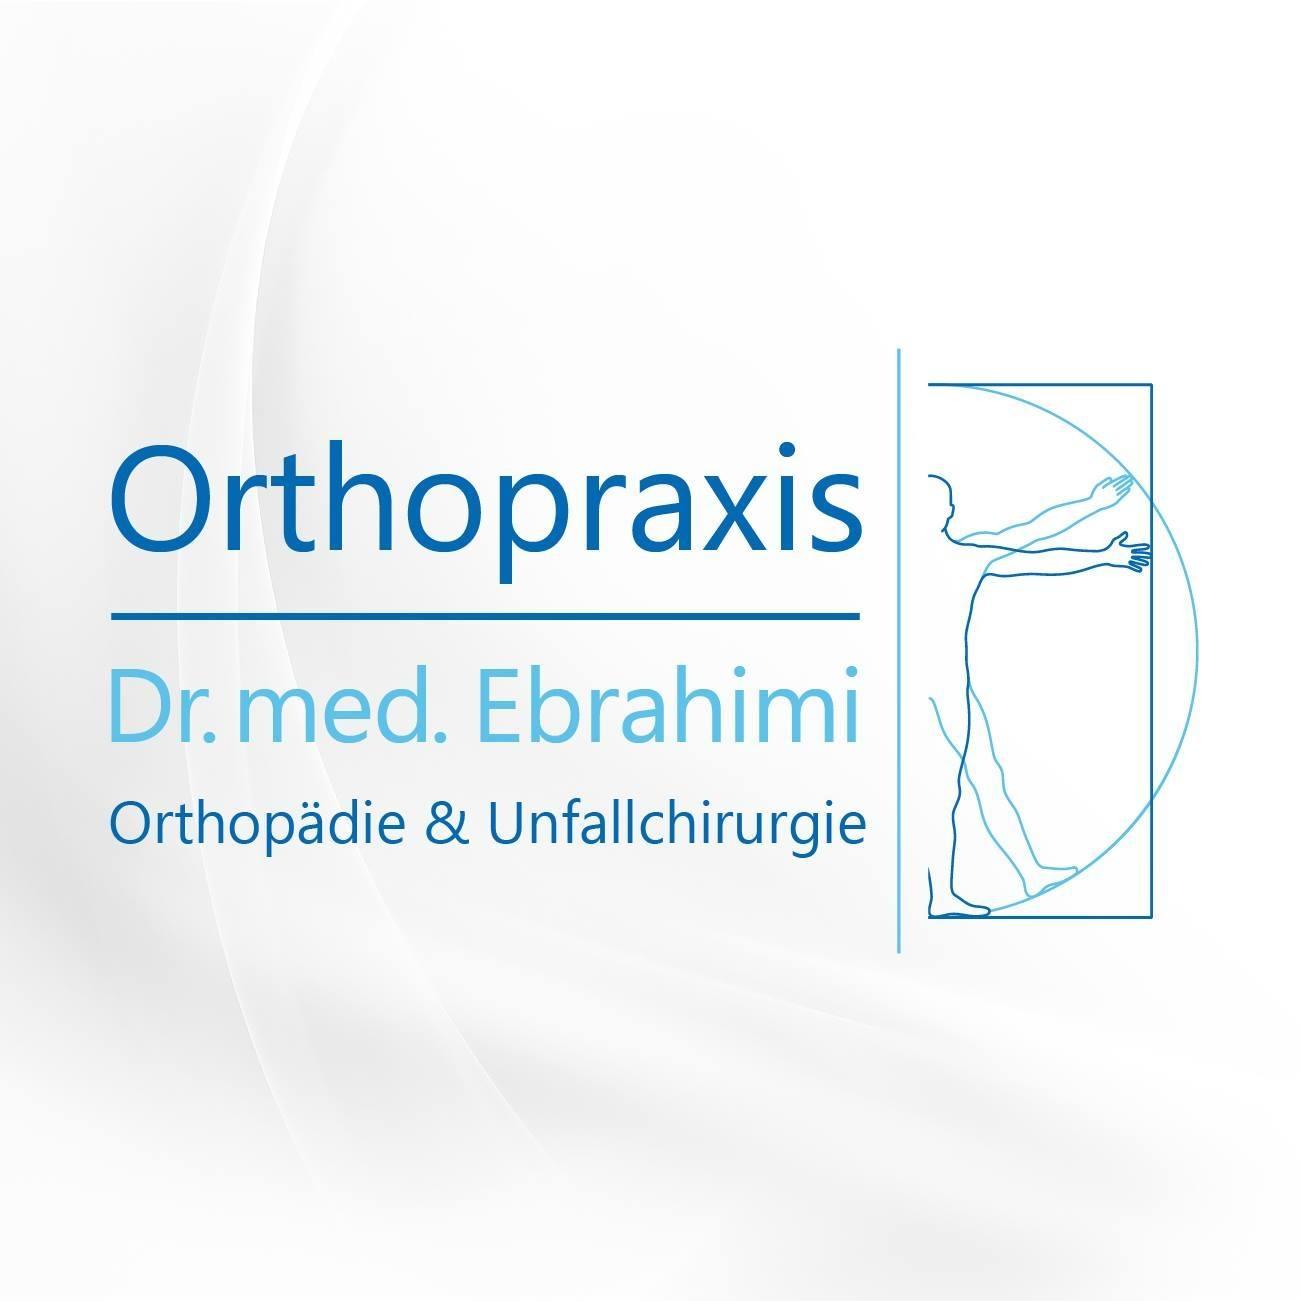 Orthopraxis Ebrahimi